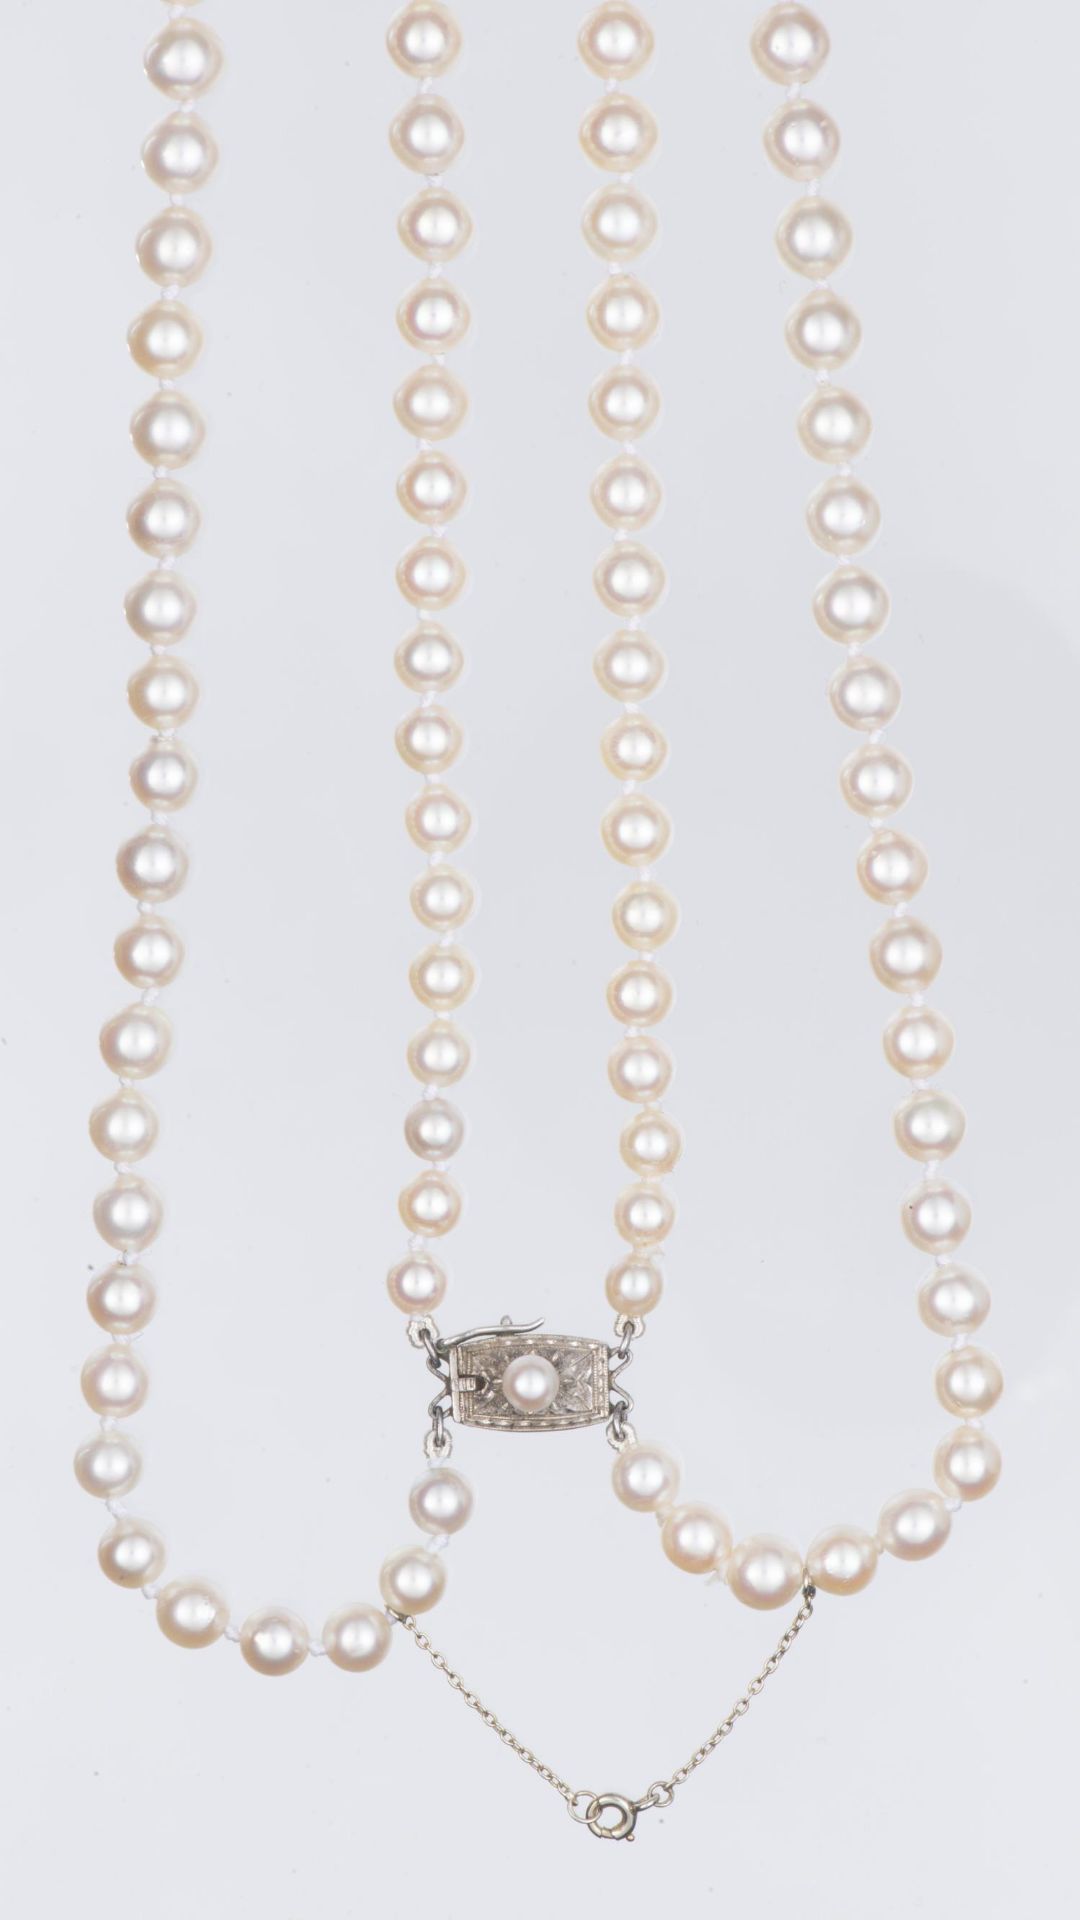 MIKIMOTO collier deux rangs de perles en chute - Image 5 of 10